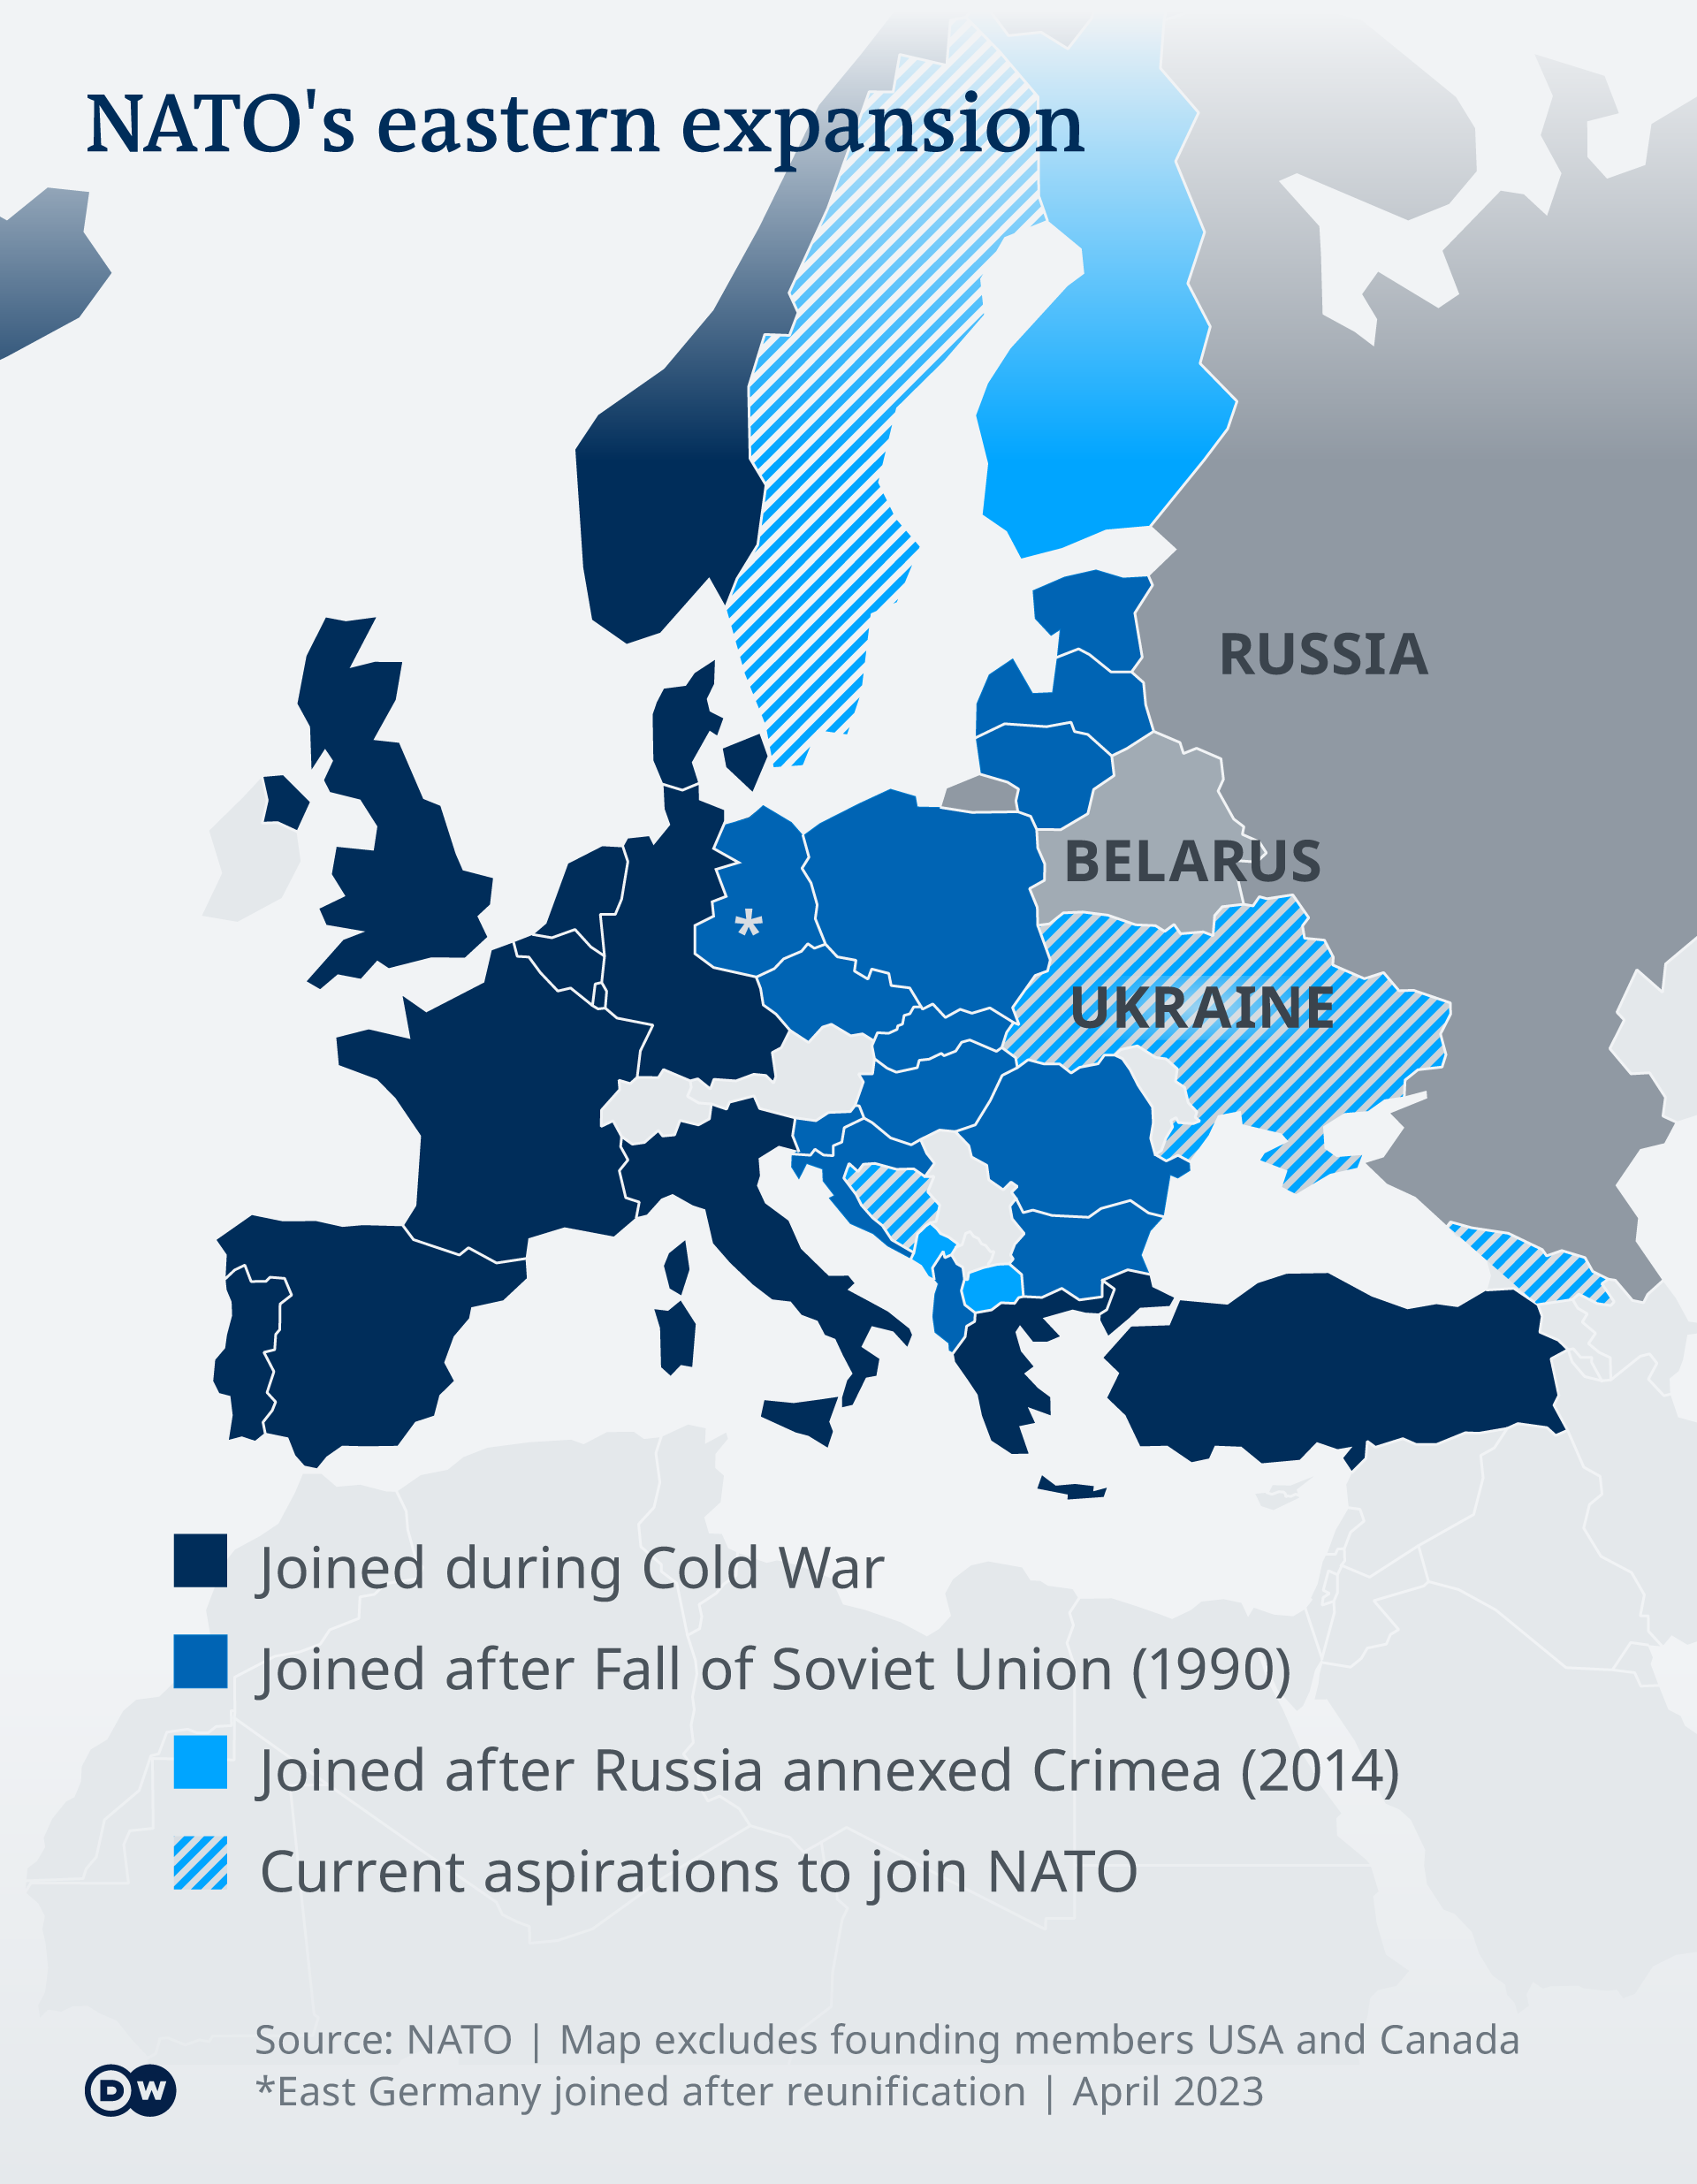 Φέρει το ΝΑΤΟ ευθύνη για τον πόλεμο στην Ουκρανία; | Ανιχνεύσεις